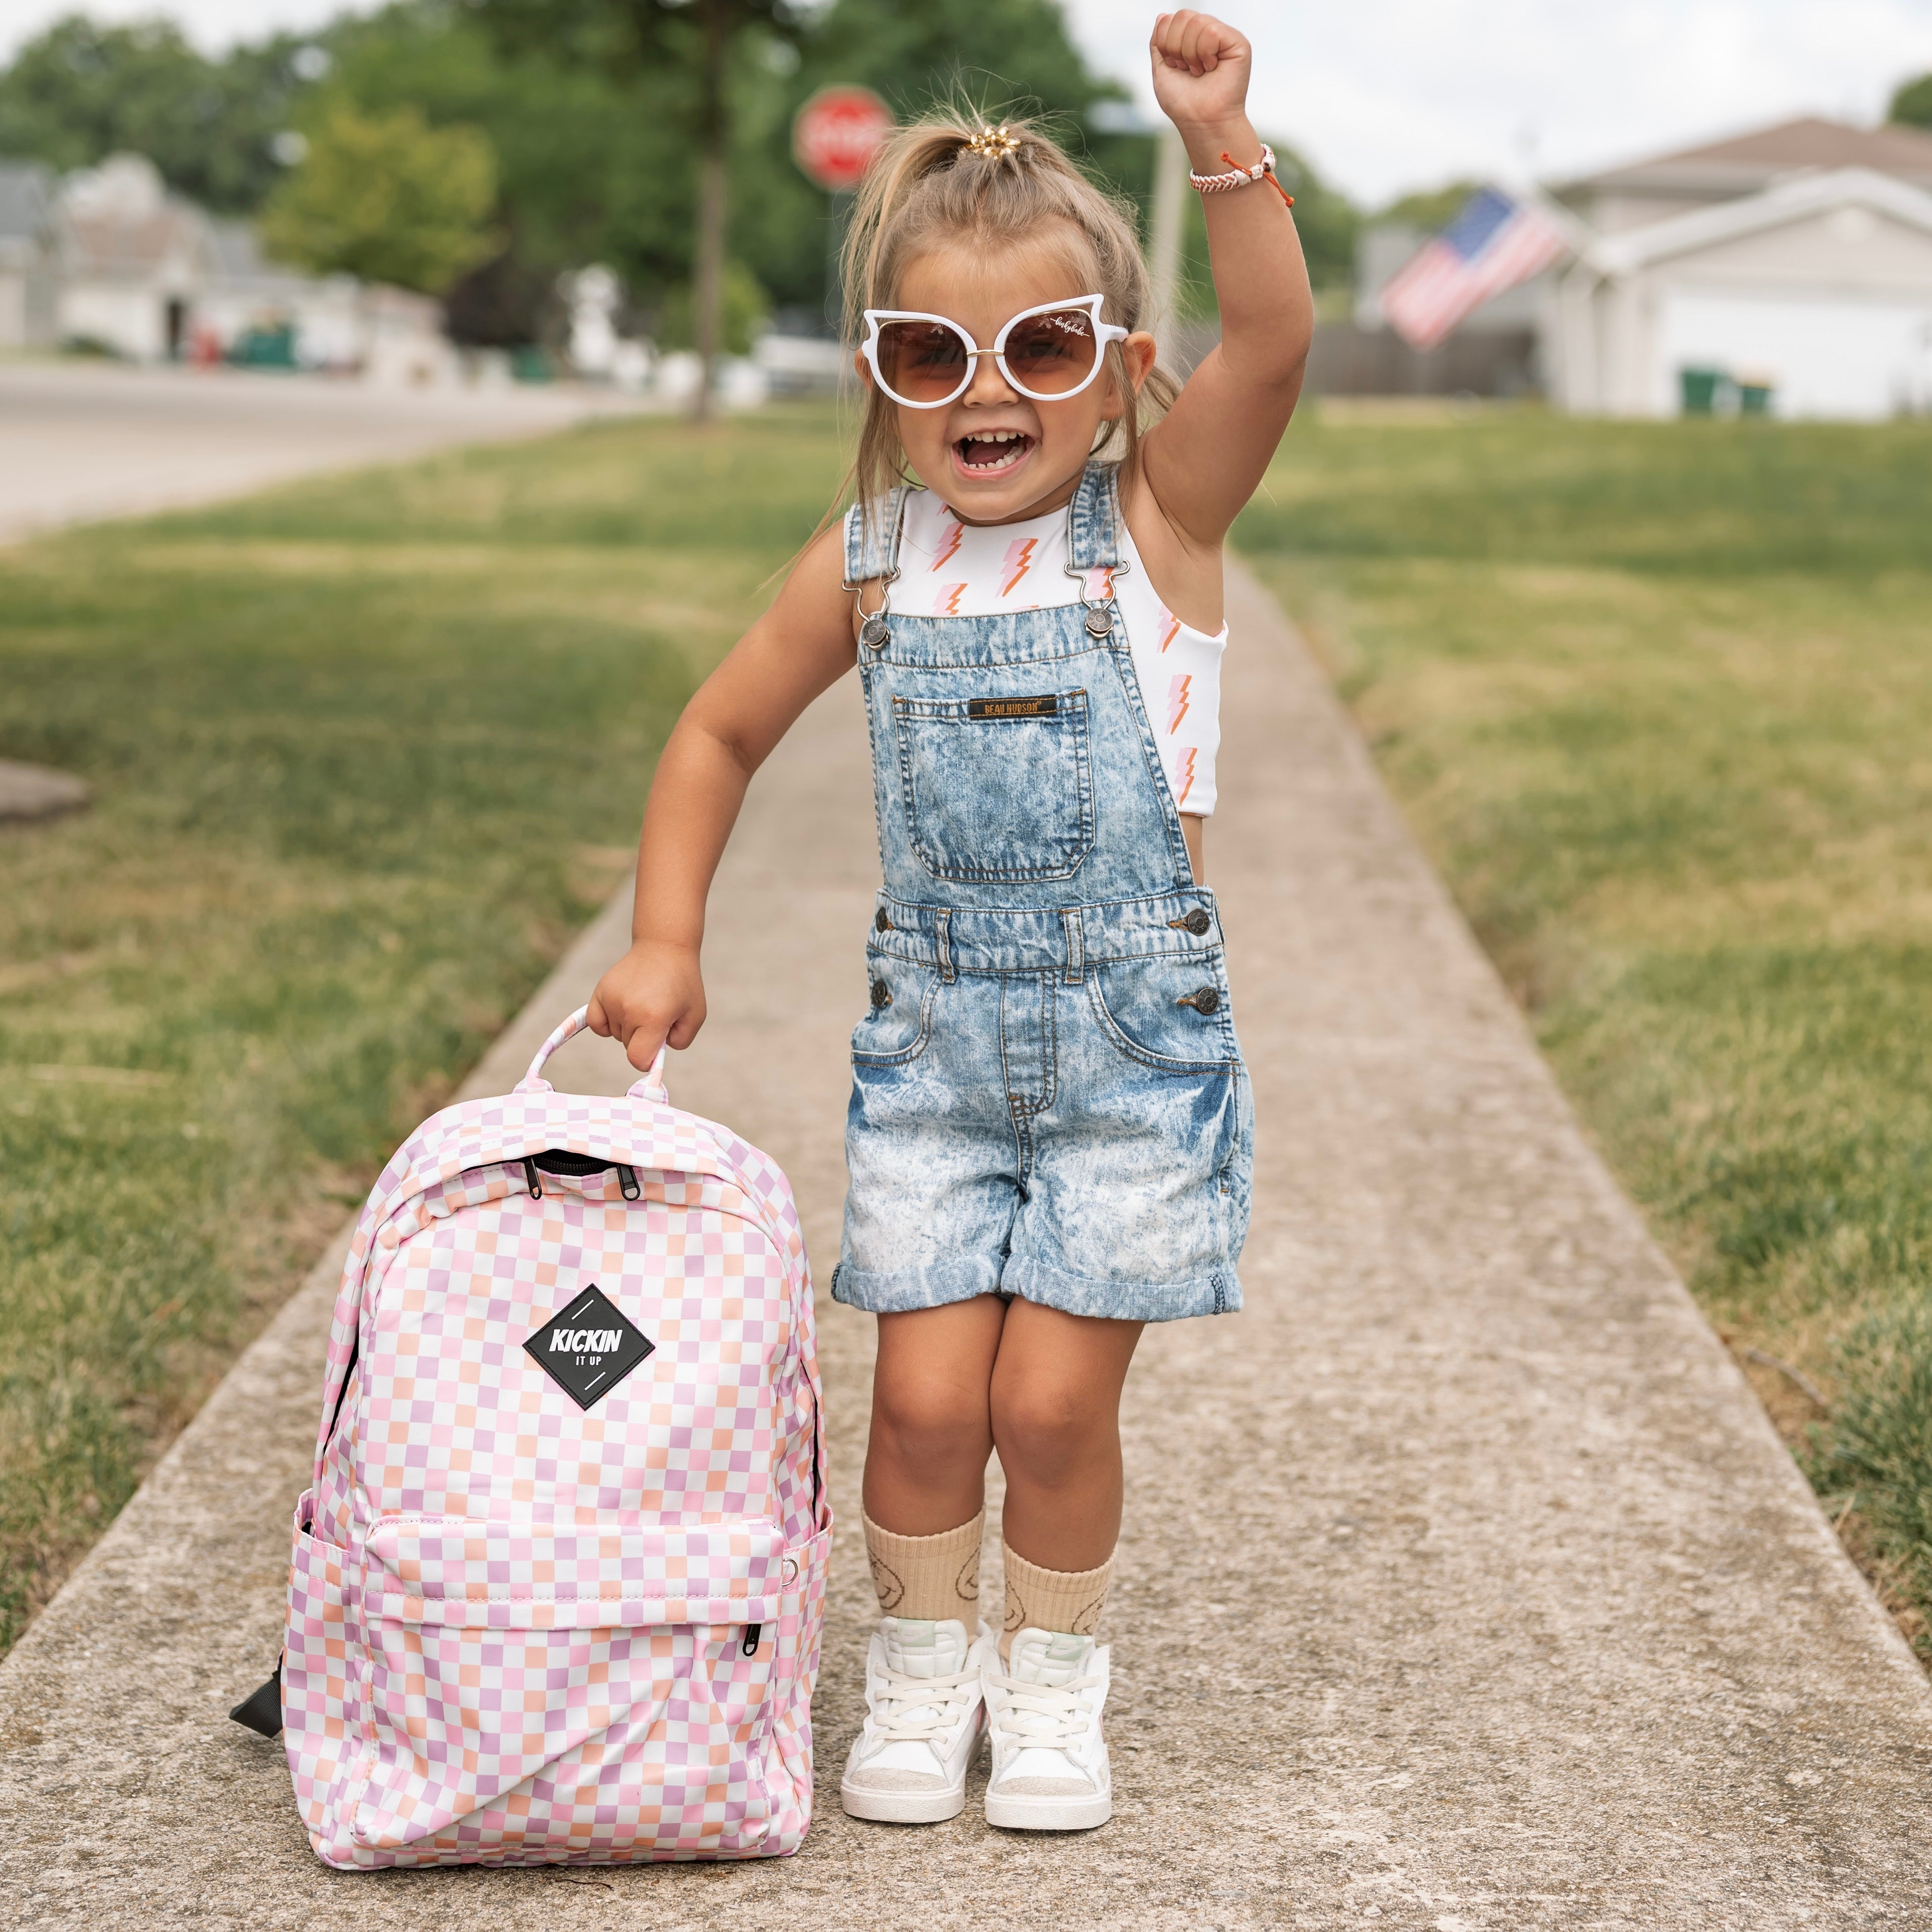 KIU Full Size Pink Checkered Backpack